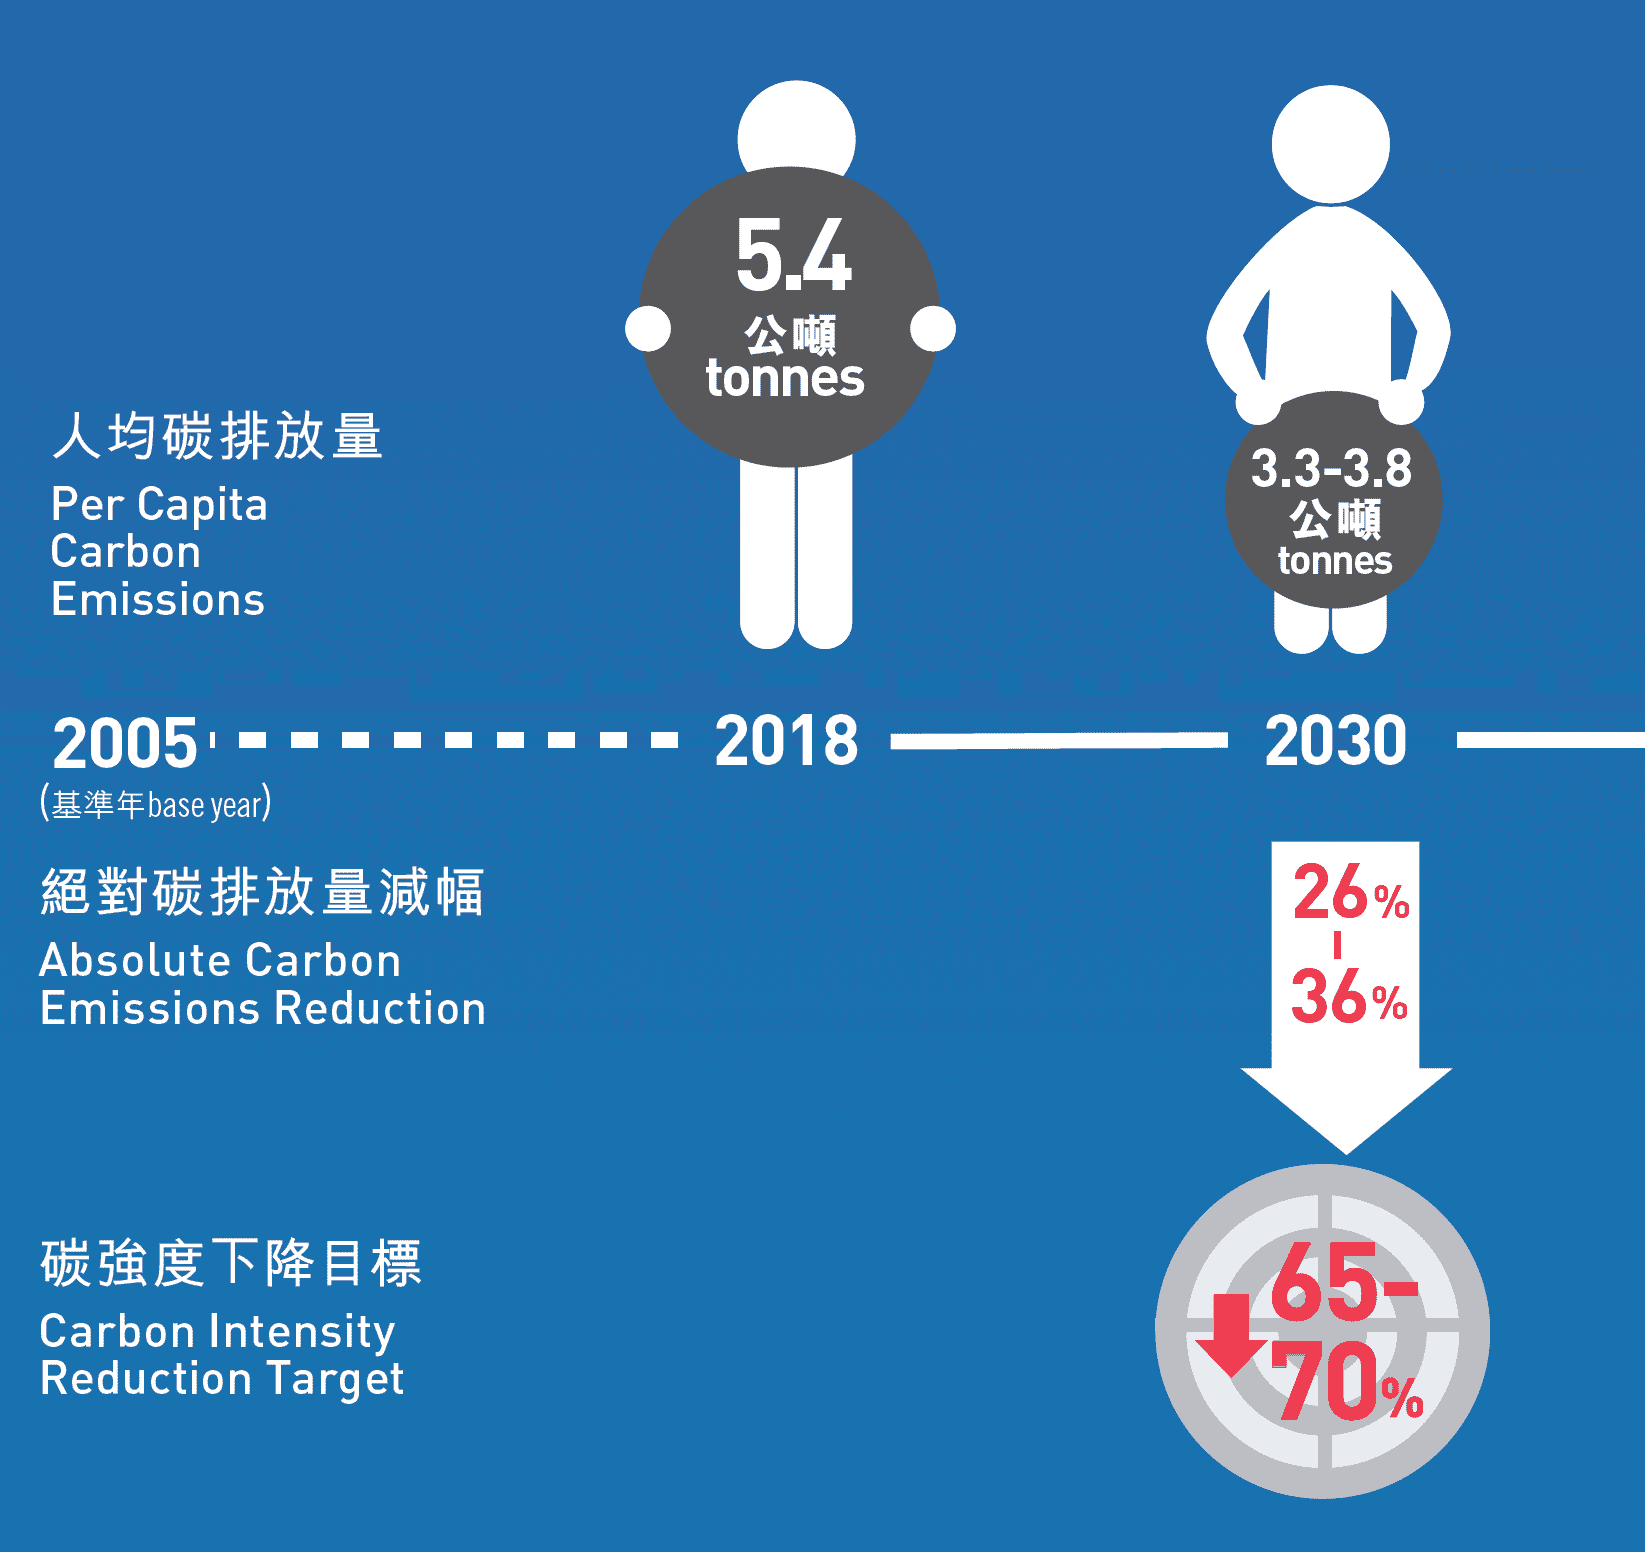 香港將於2030年把絕對碳排放量減低26%至36%，以2005年水平為基準。(資料來源: 環境局)